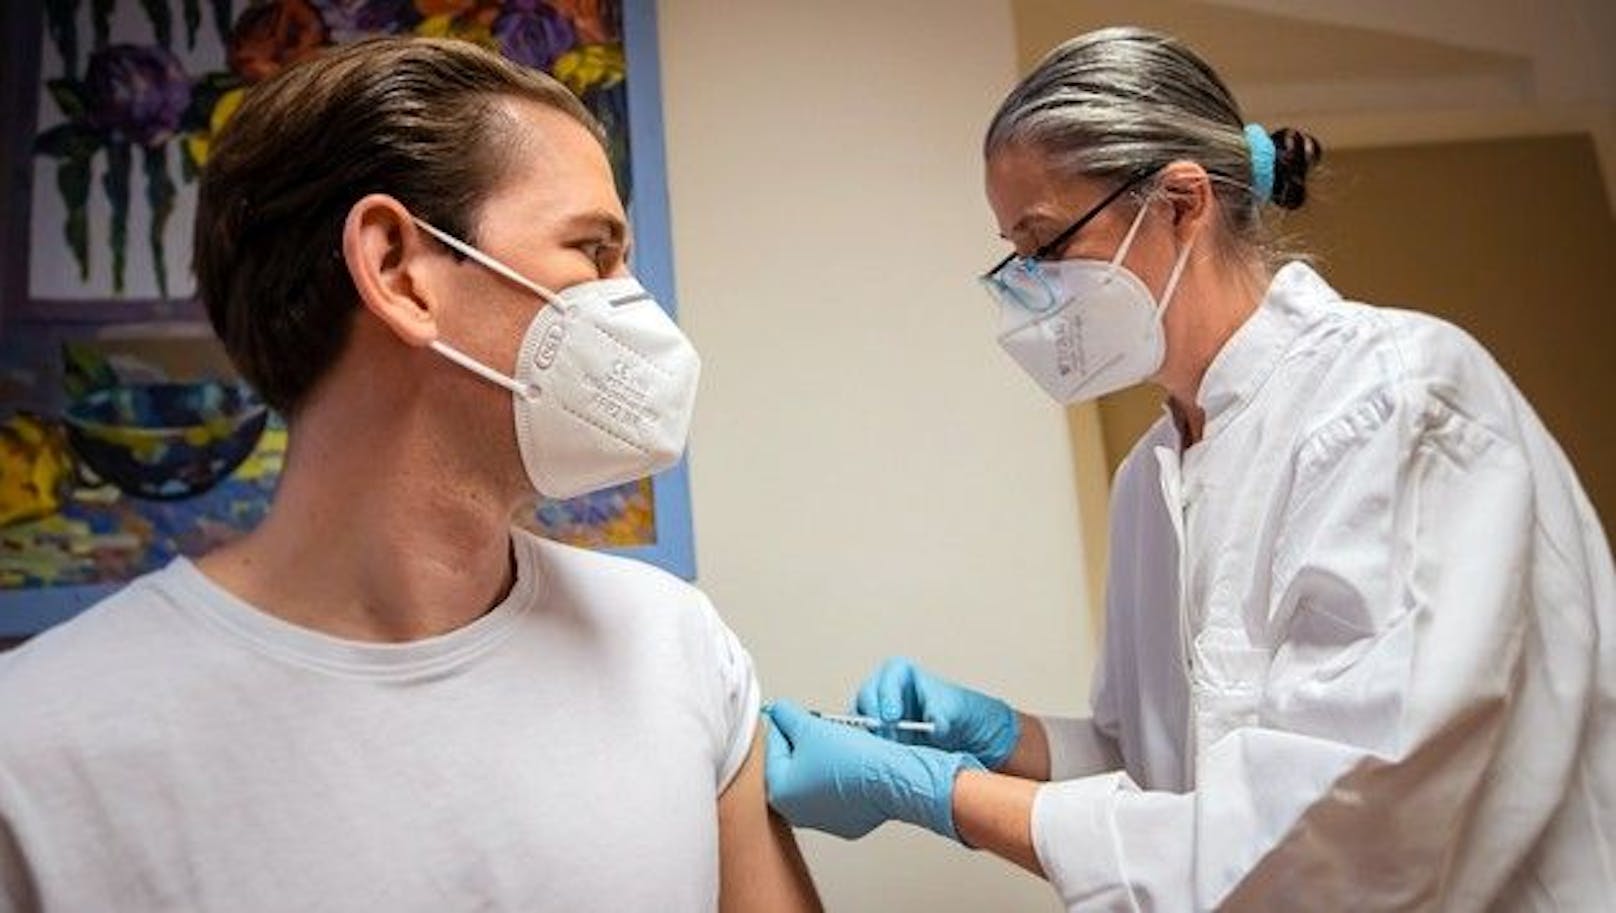 Bundeskanzler Sebastian Kurz bei seiner Impfung mit AstraZeneca